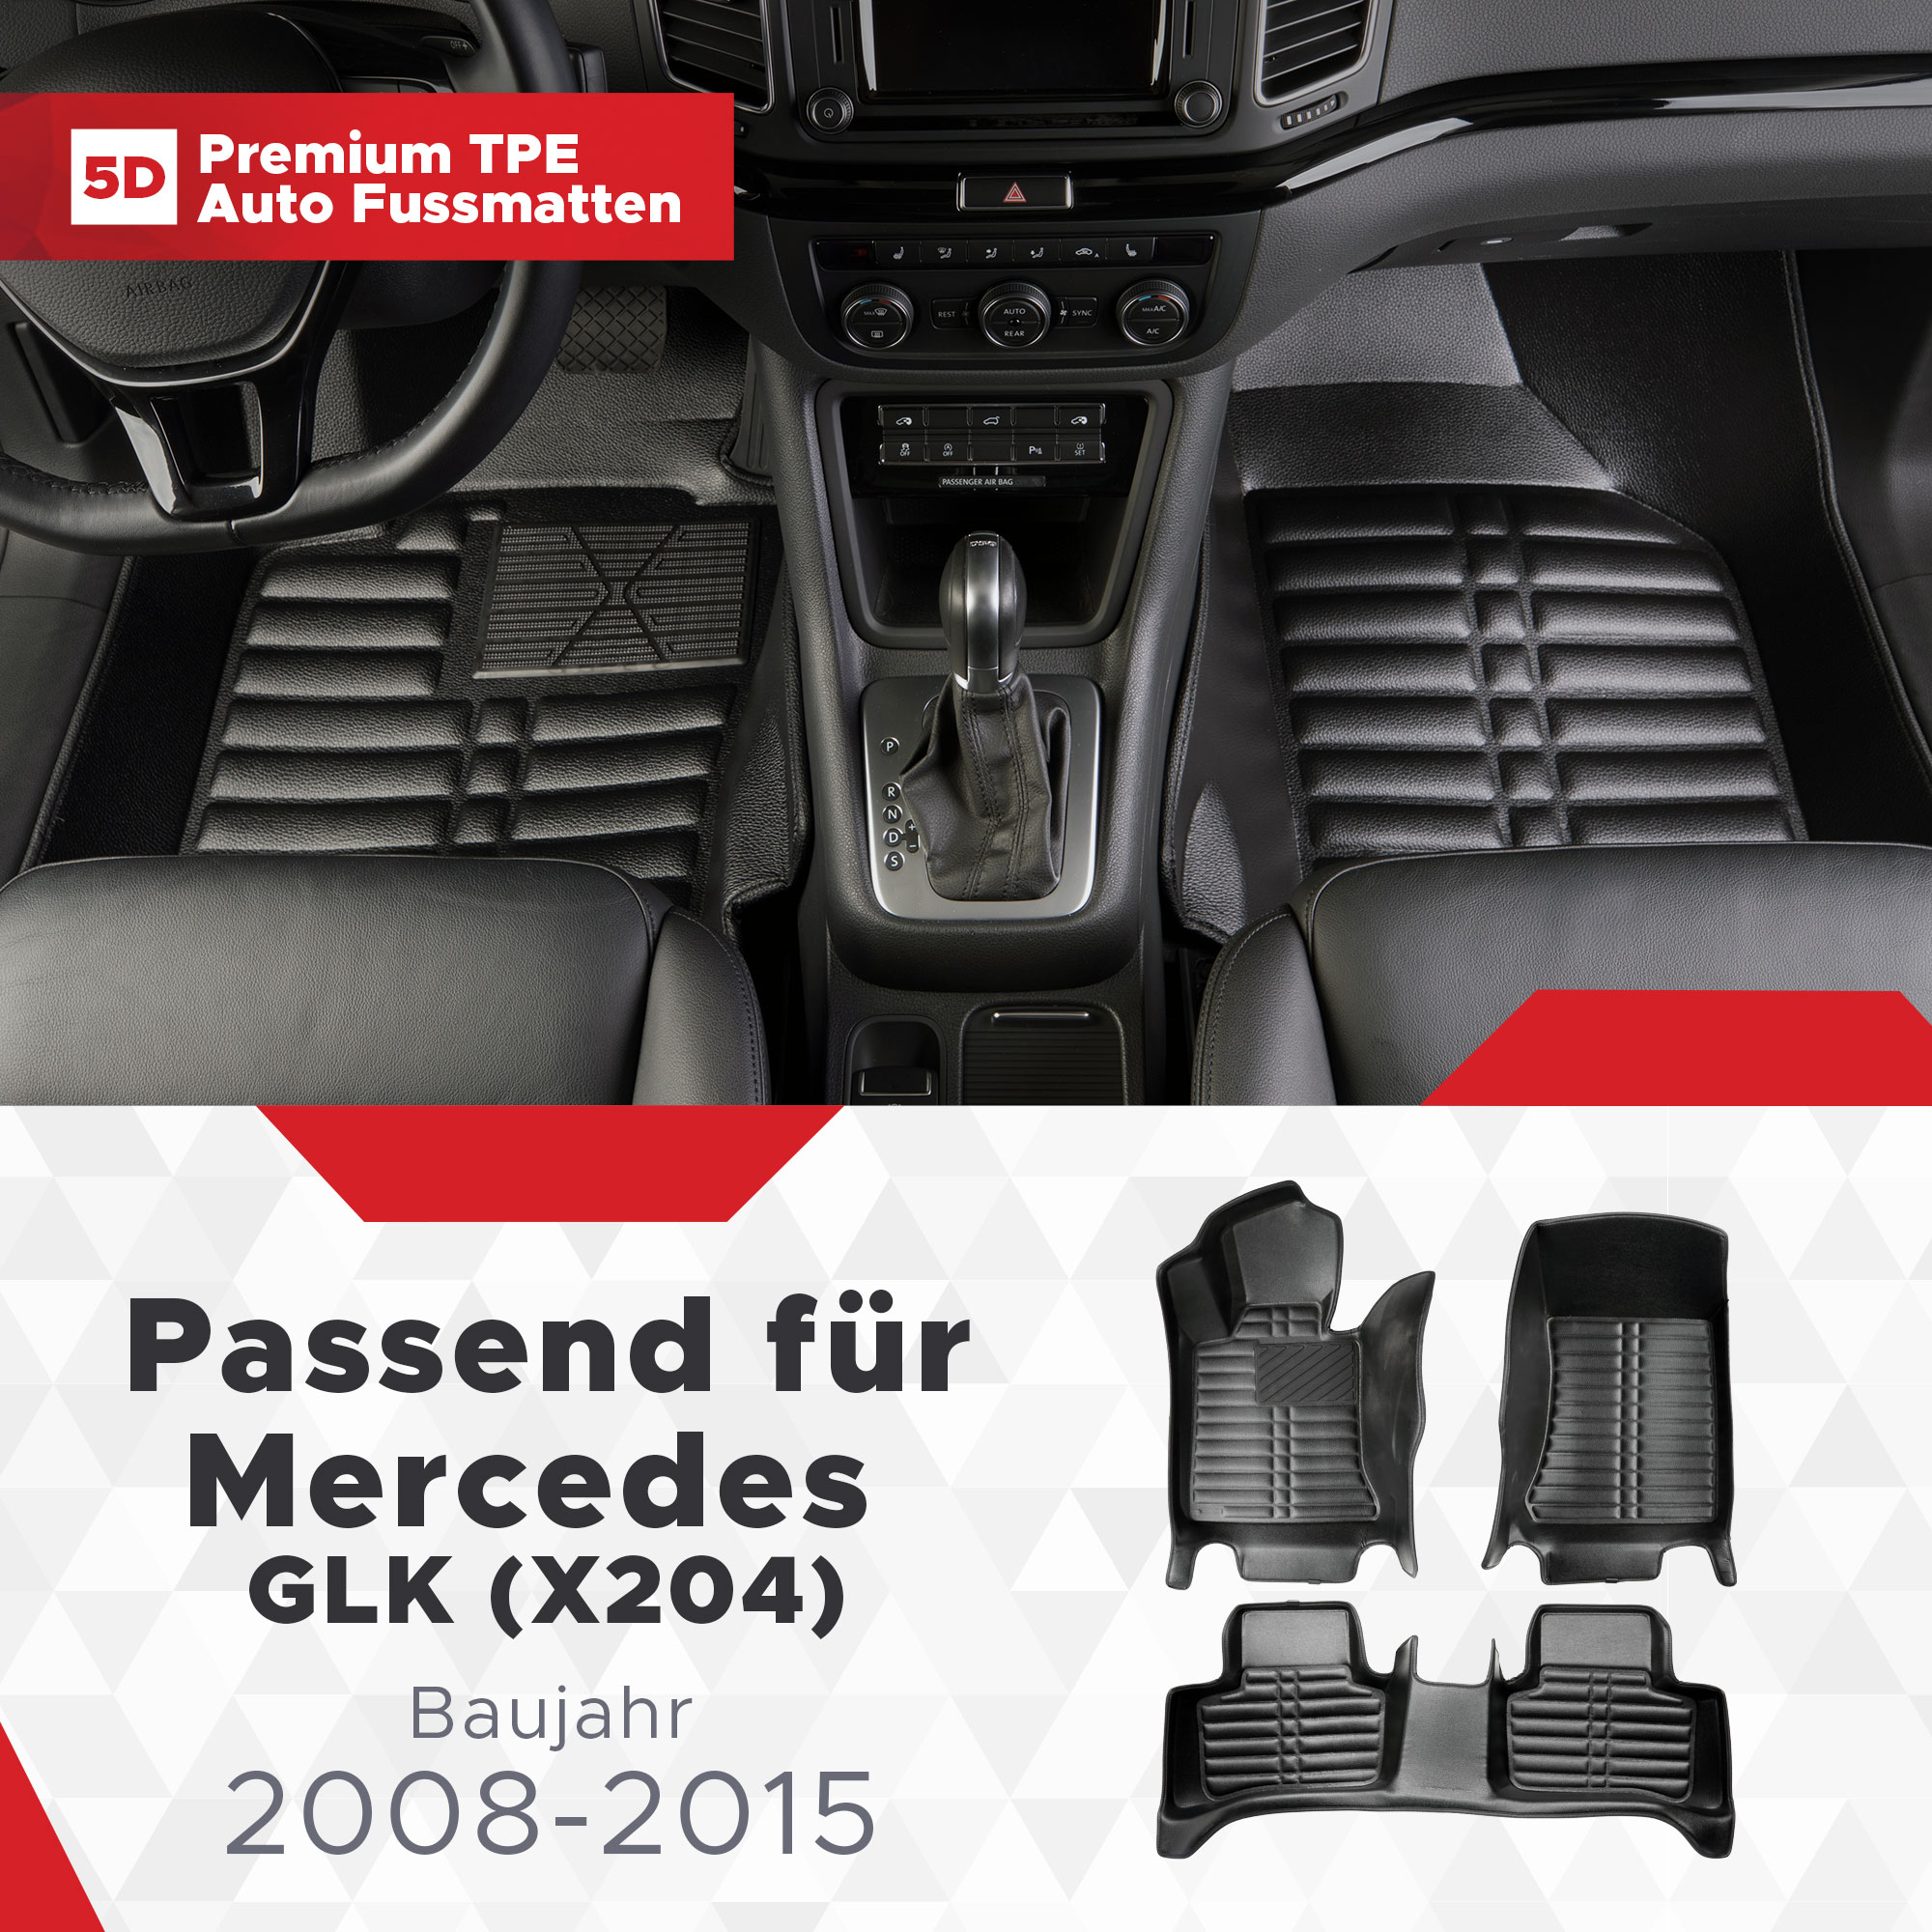 5D Mercedes GLK (X204) Fussmatten Bj 2008-2015 TPE